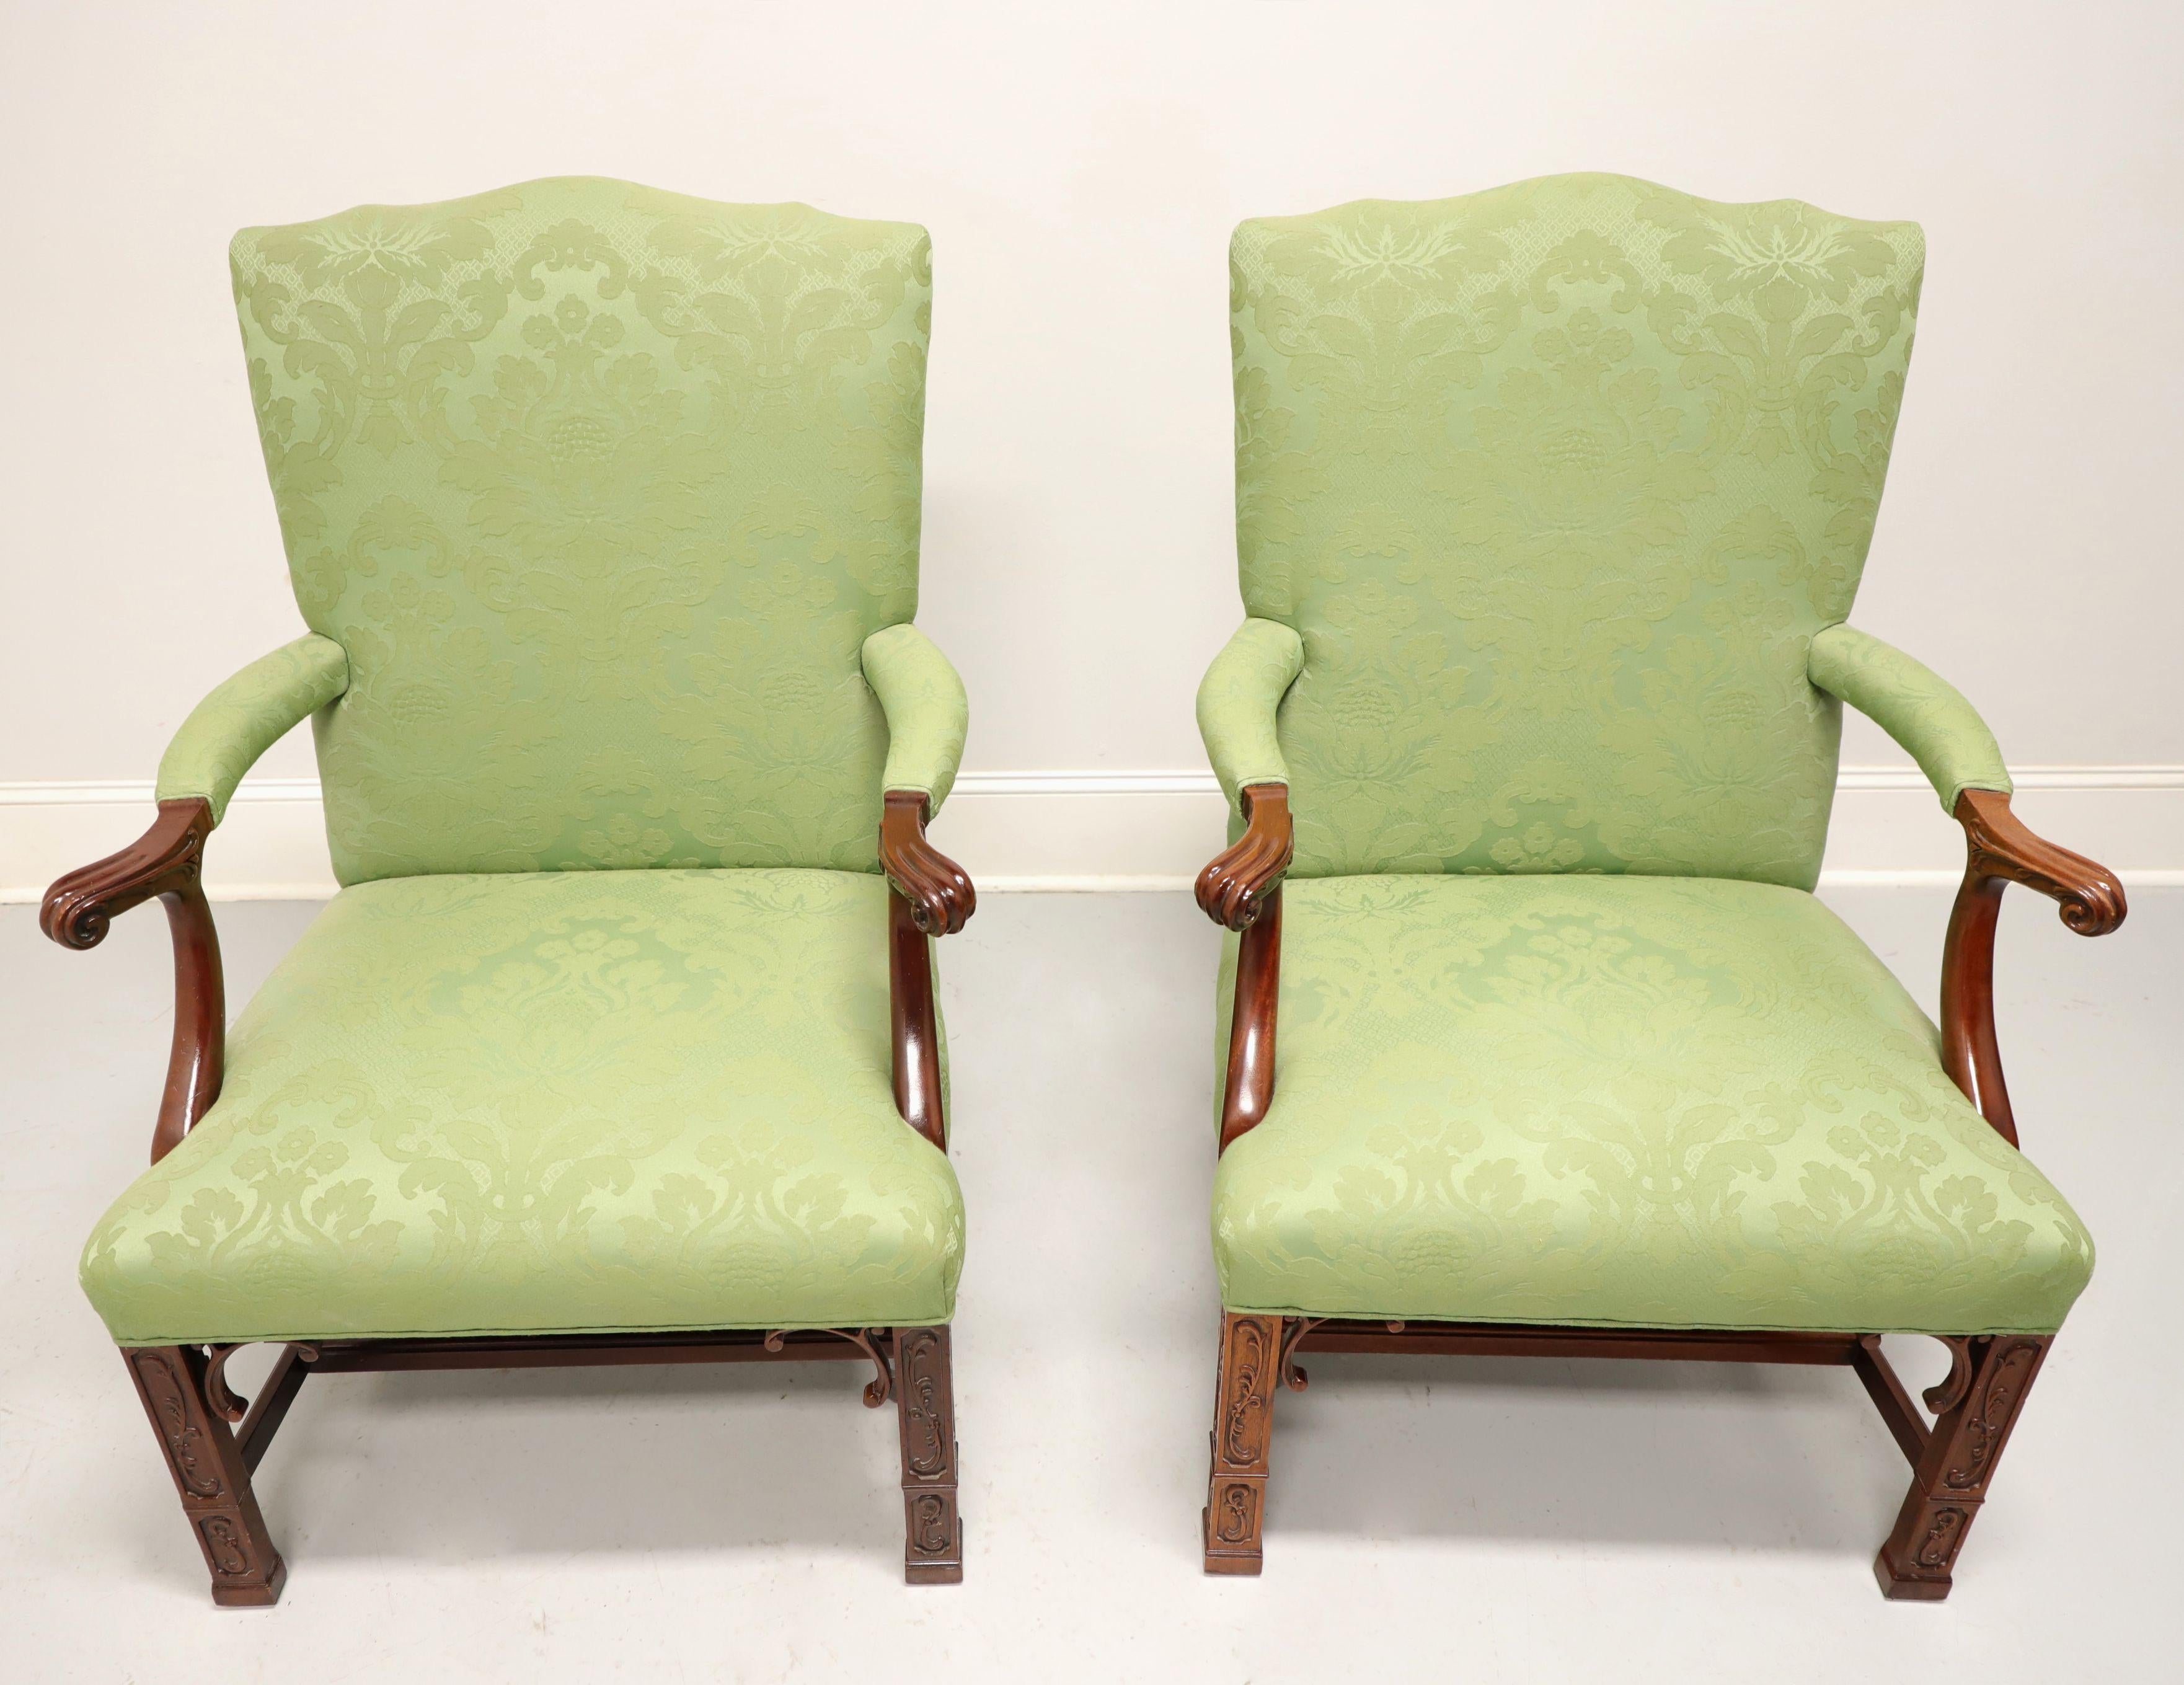 Ein Paar gepolsterte Sessel im Chippendale-Stil von Southwood, deren Gainsborough. Gestell aus Mahagoni, Polsterung aus hellgrünem Brokatstoff, gepolsterte Armlehnen, geradlinige, mit Laubsägearbeiten verzierte Vorderbeine, Läuferbasis und Füße mit